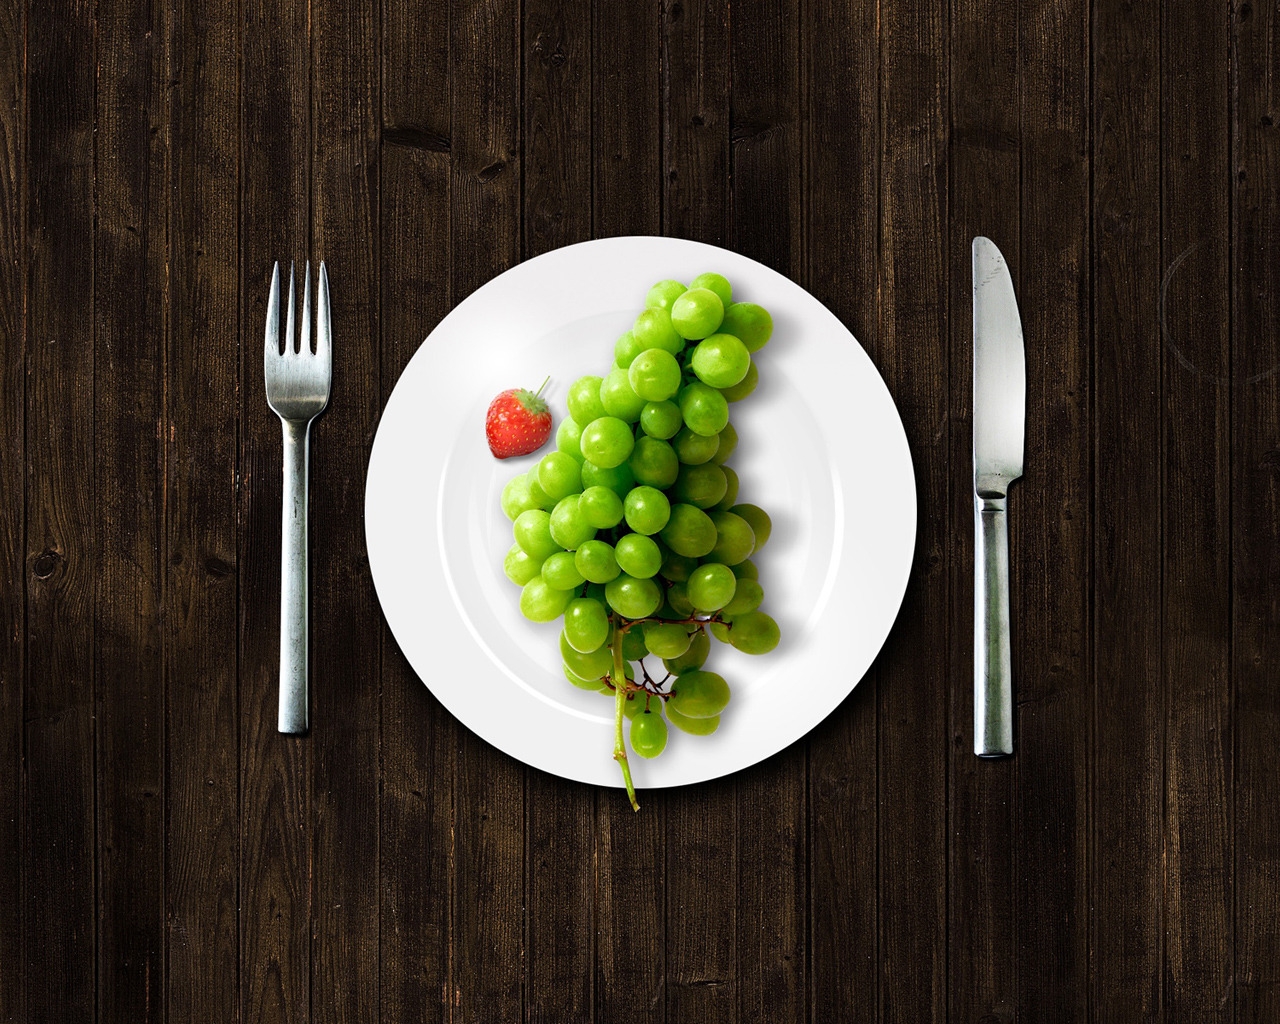 Grape Dinner for 1280 x 1024 resolution